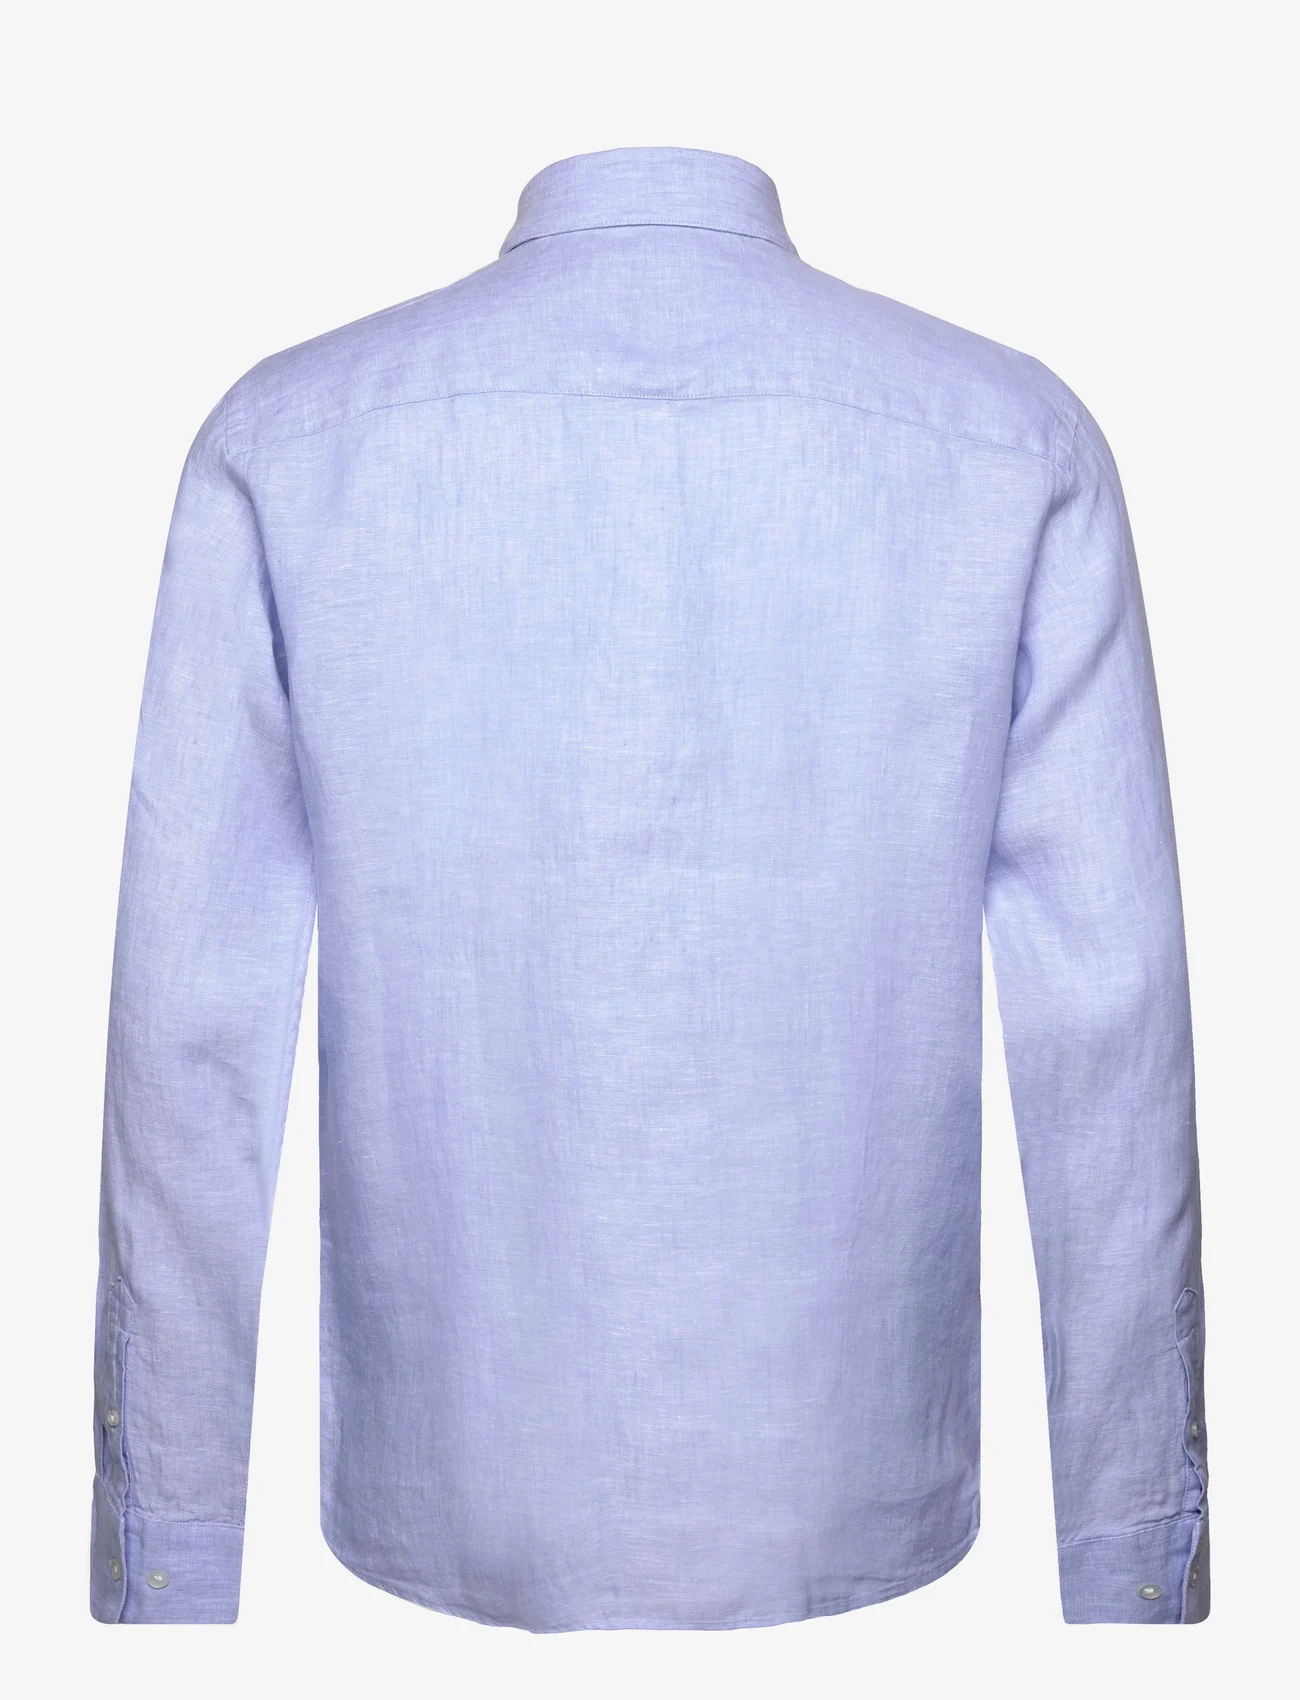 Bruun & Stengade - BS Bilbao Casual Modern Fit Shirt - linneskjortor - light blue - 1